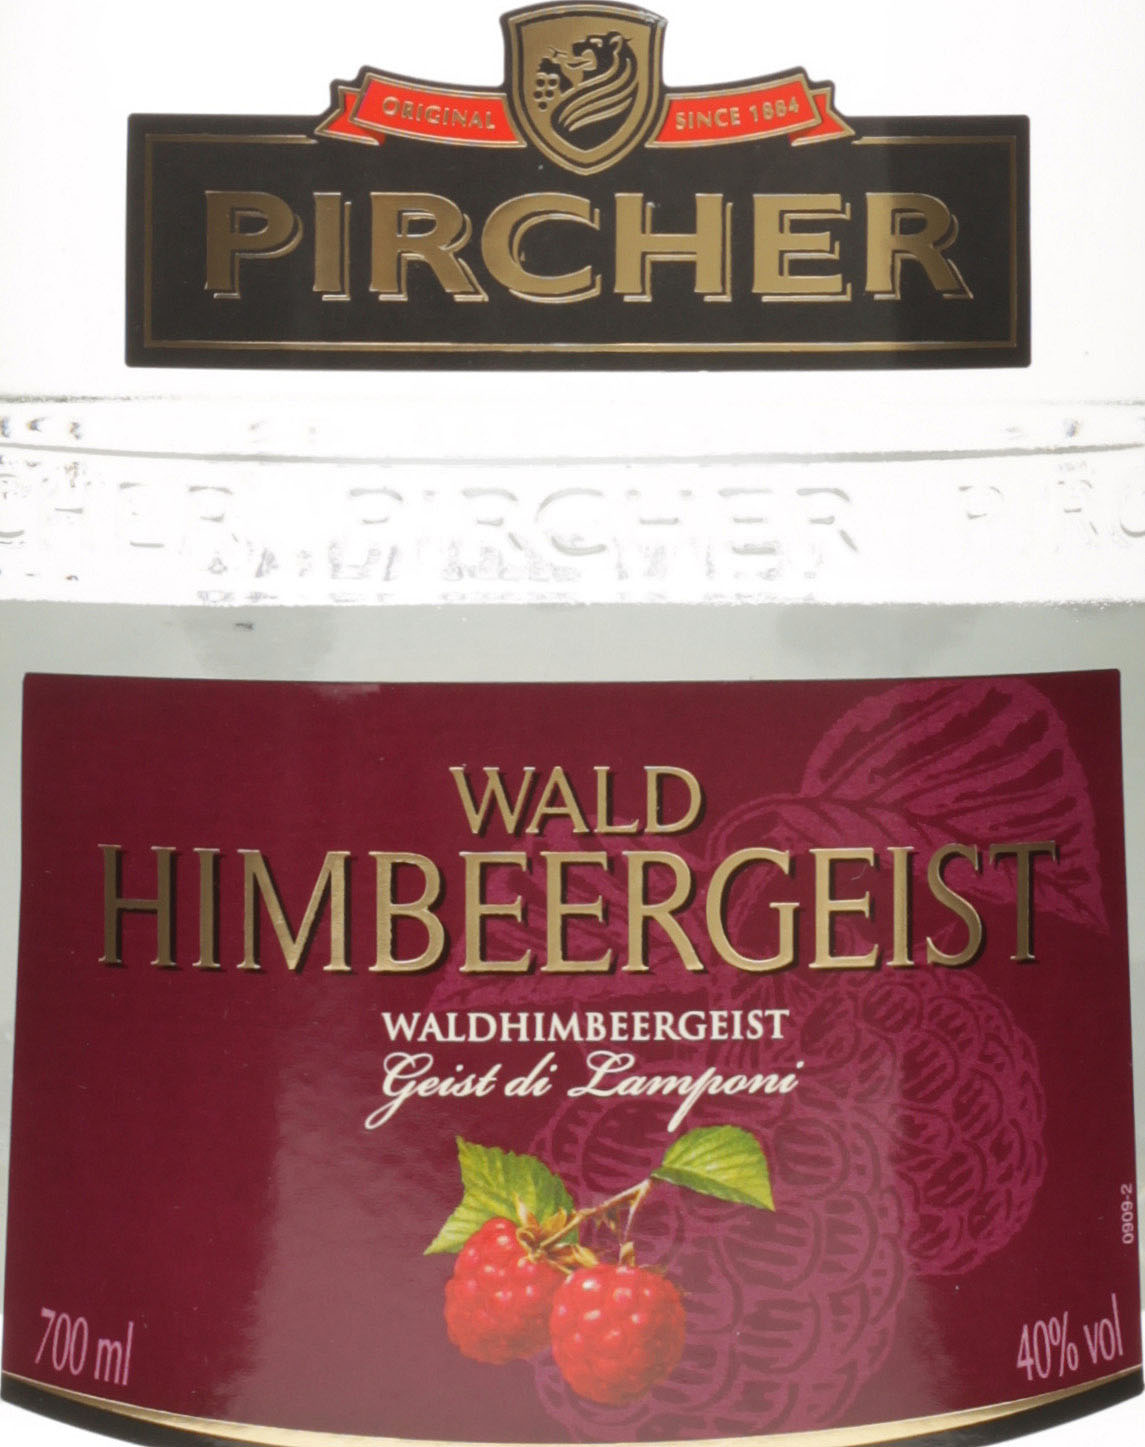 Pircher Waldhimbeergeist 700ml 40